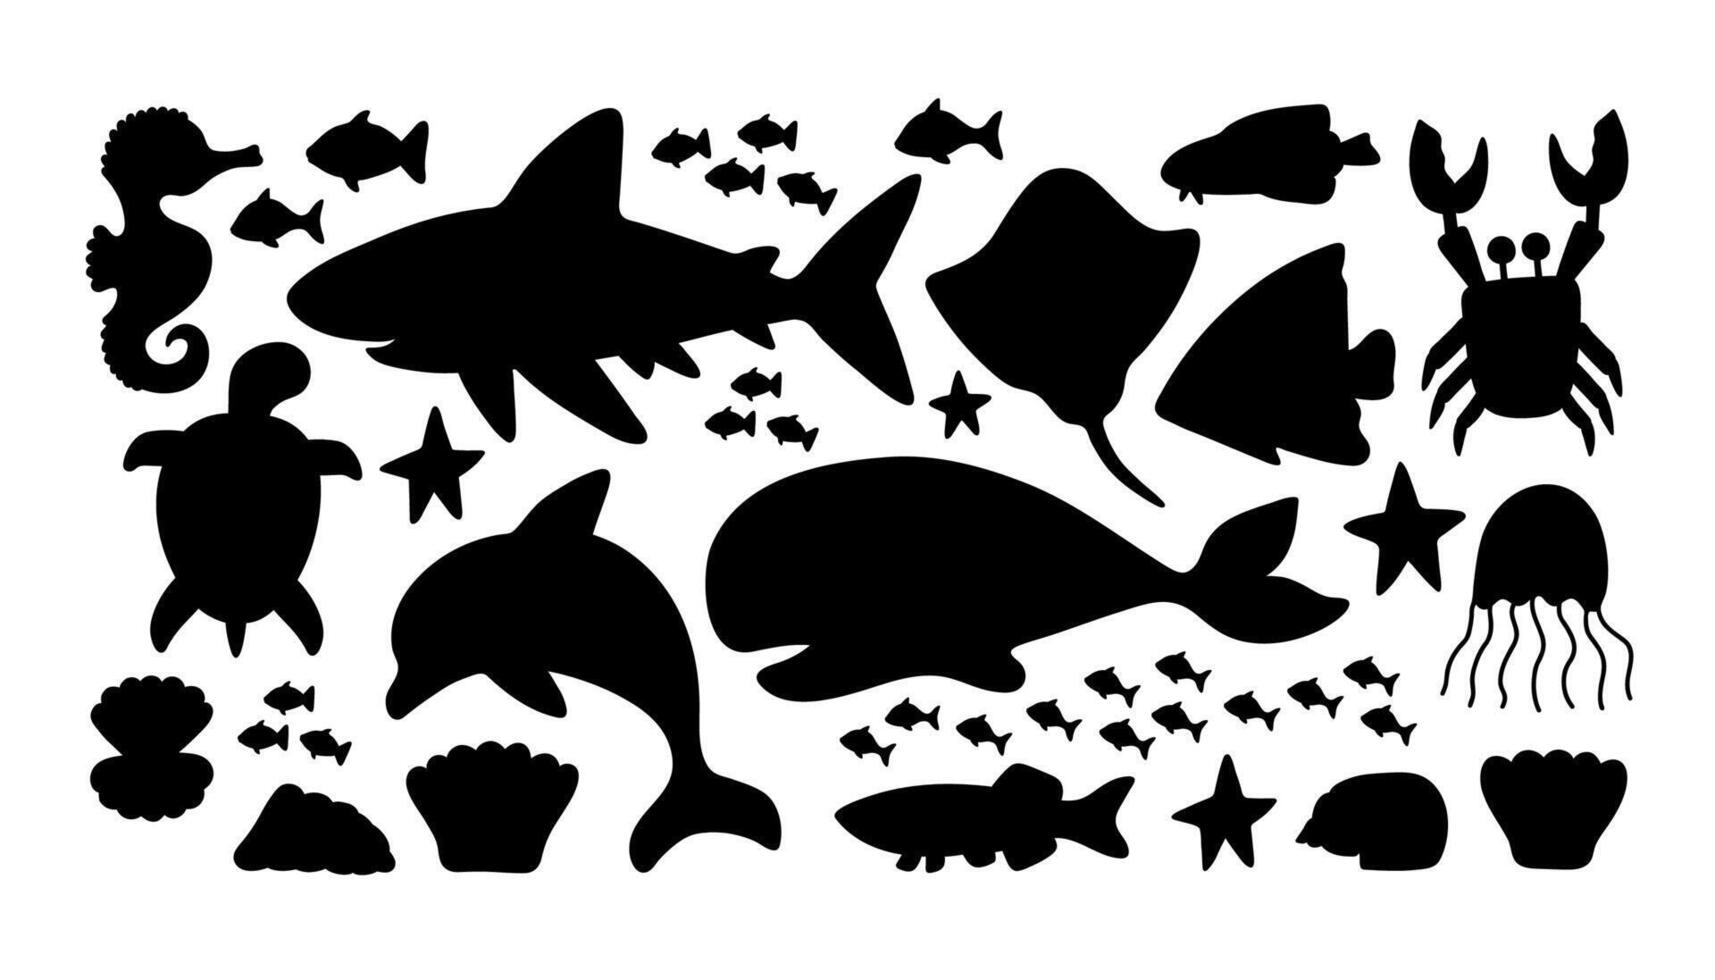 Vektor Meer einstellen Silhouetten mit Delfin, Stachelrochen, Krabbe, Hai, Schildkröte, Fisch, Muschel und Seepferdchen